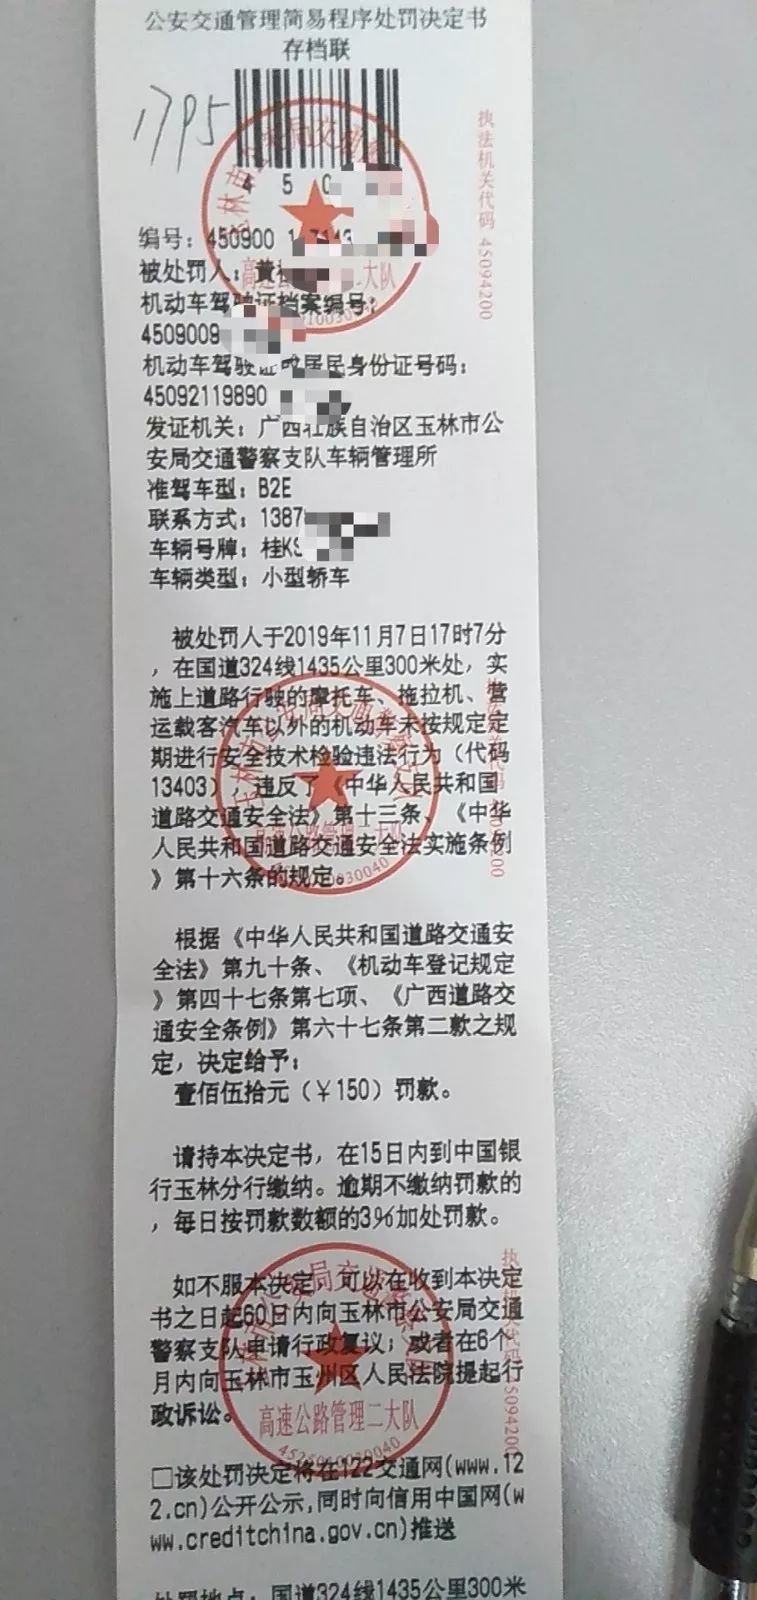 根据《中华人民共和国道路交通安全法》相关规定,黄某因饮酒后驾驶